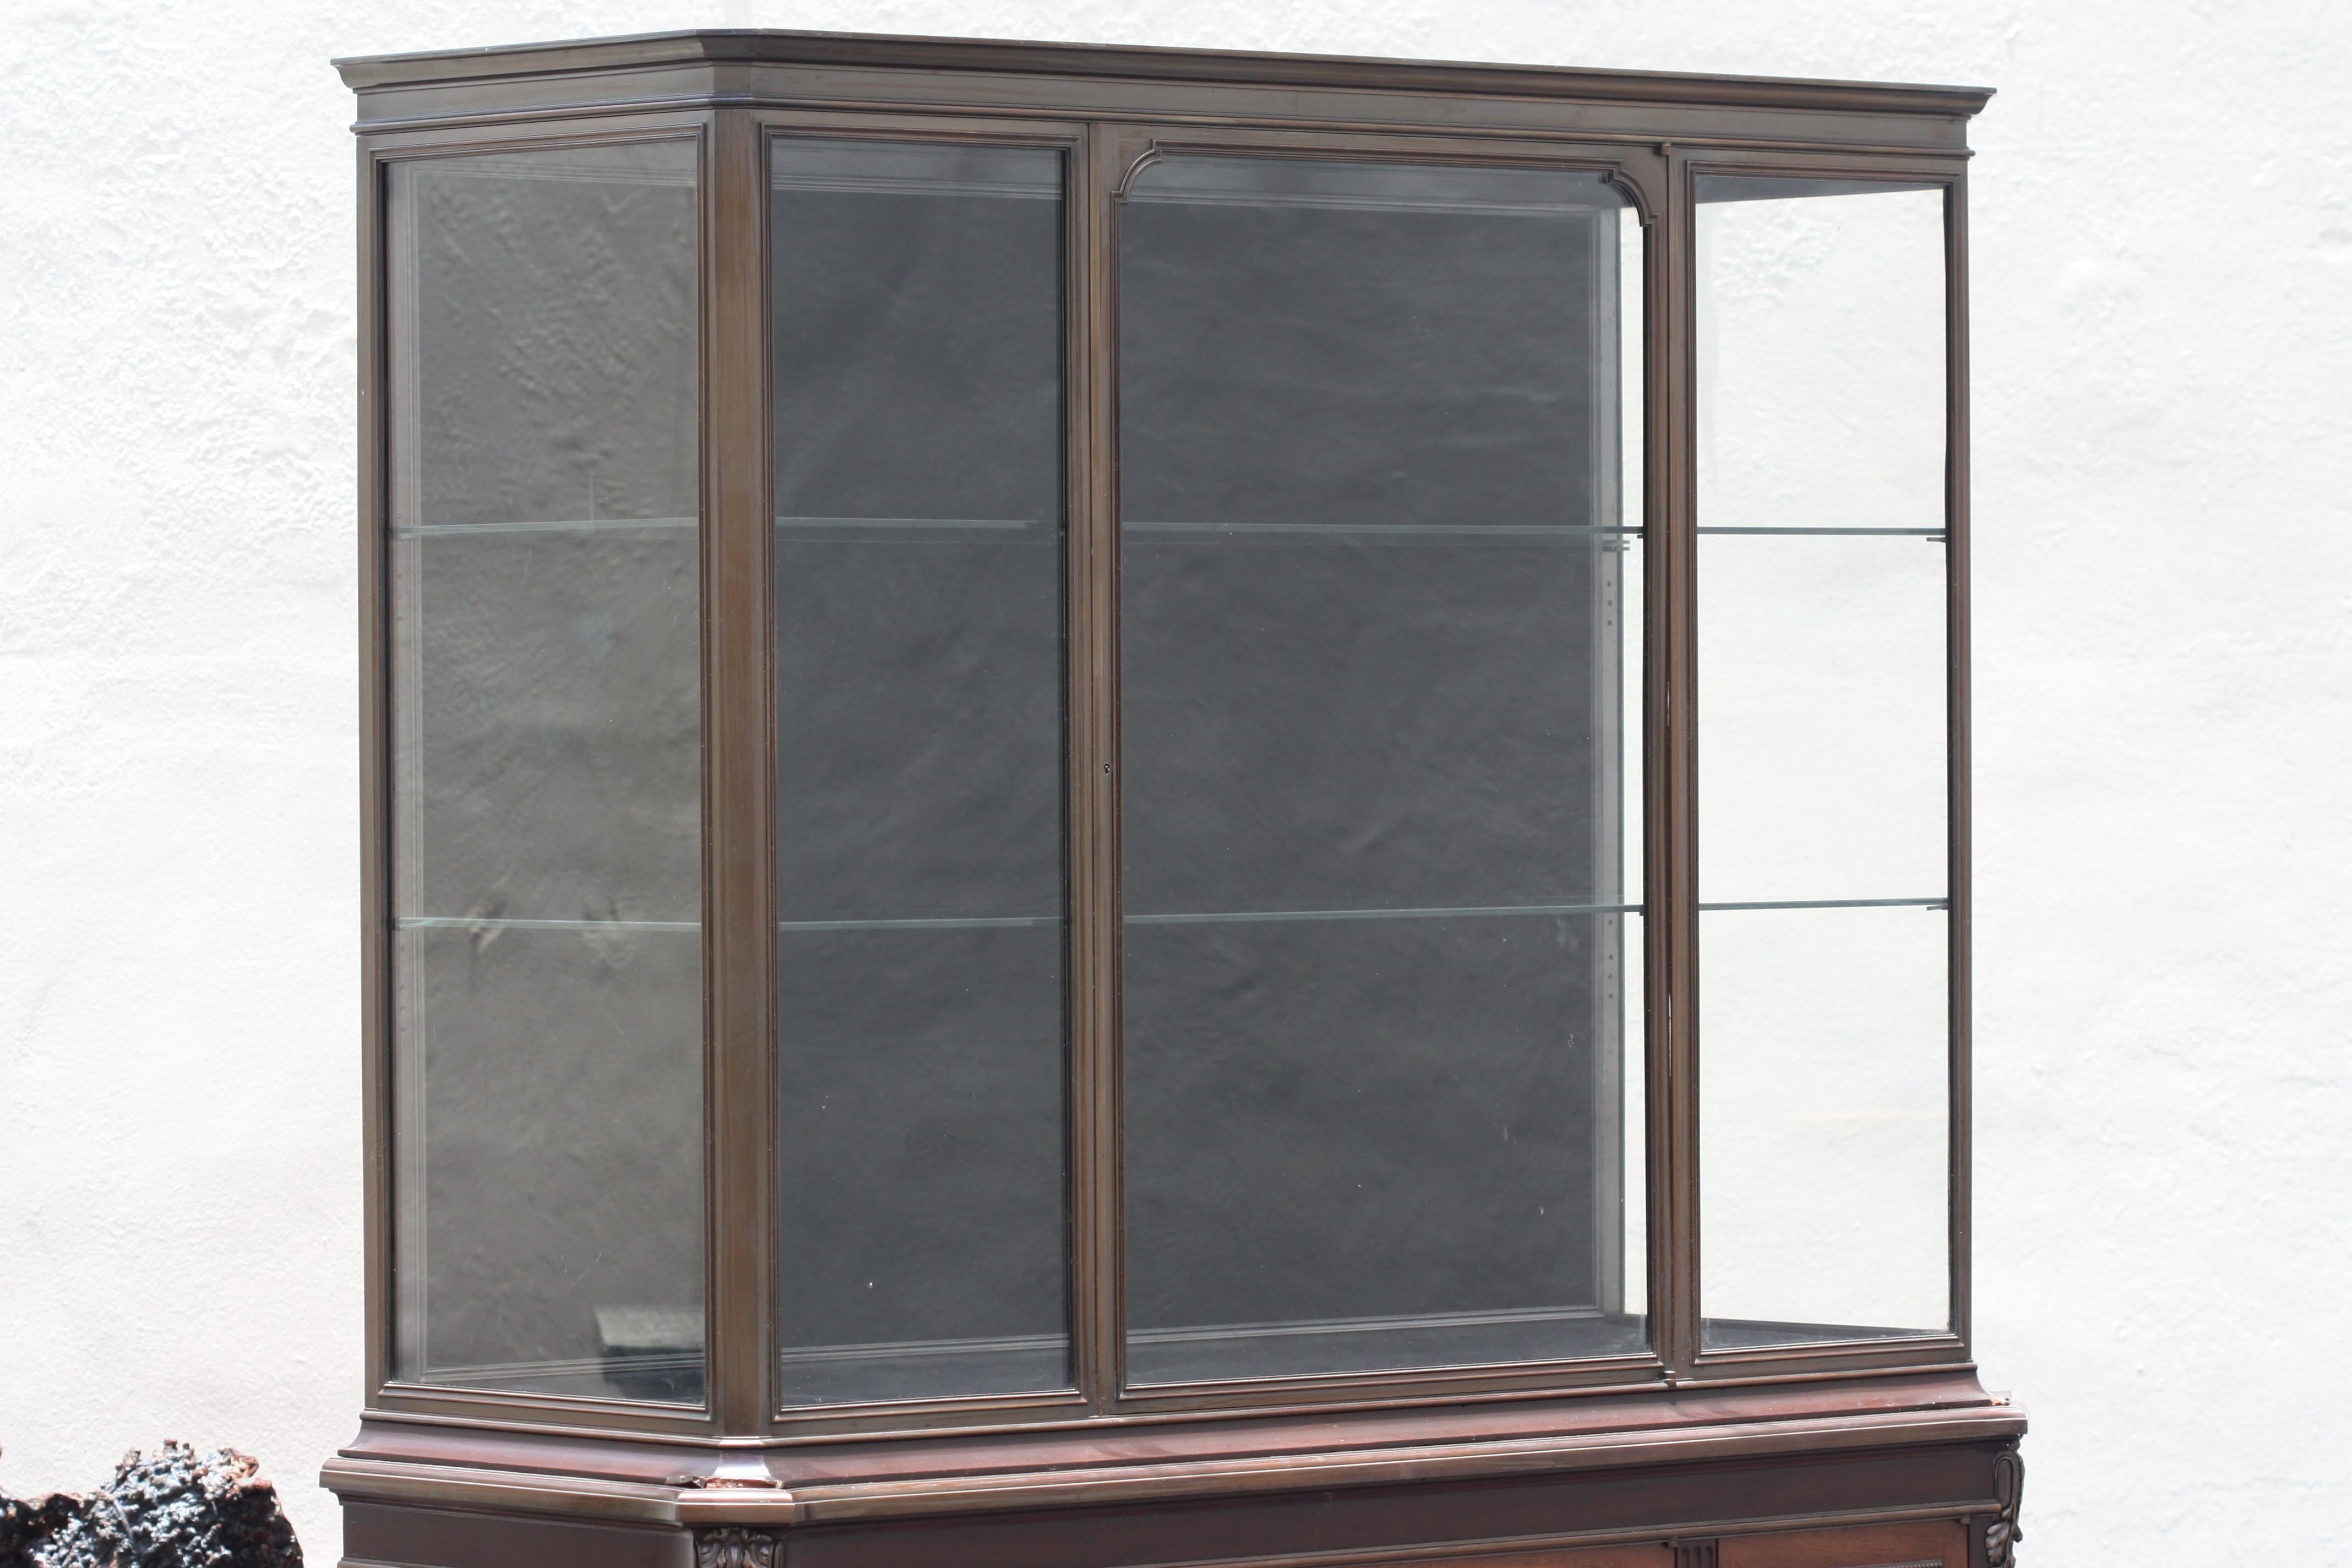 Henry DASSON (1825-1896)
Une vitrine
Acajou avec partie supérieure en bronze patiné, 
signé et daté Henry Dasson & Cie, 1889 à la bordure moulée du côté droit, les carcasses estampillées HENRY DASSON 1889. 
Hauteur 5 ft. 11.5